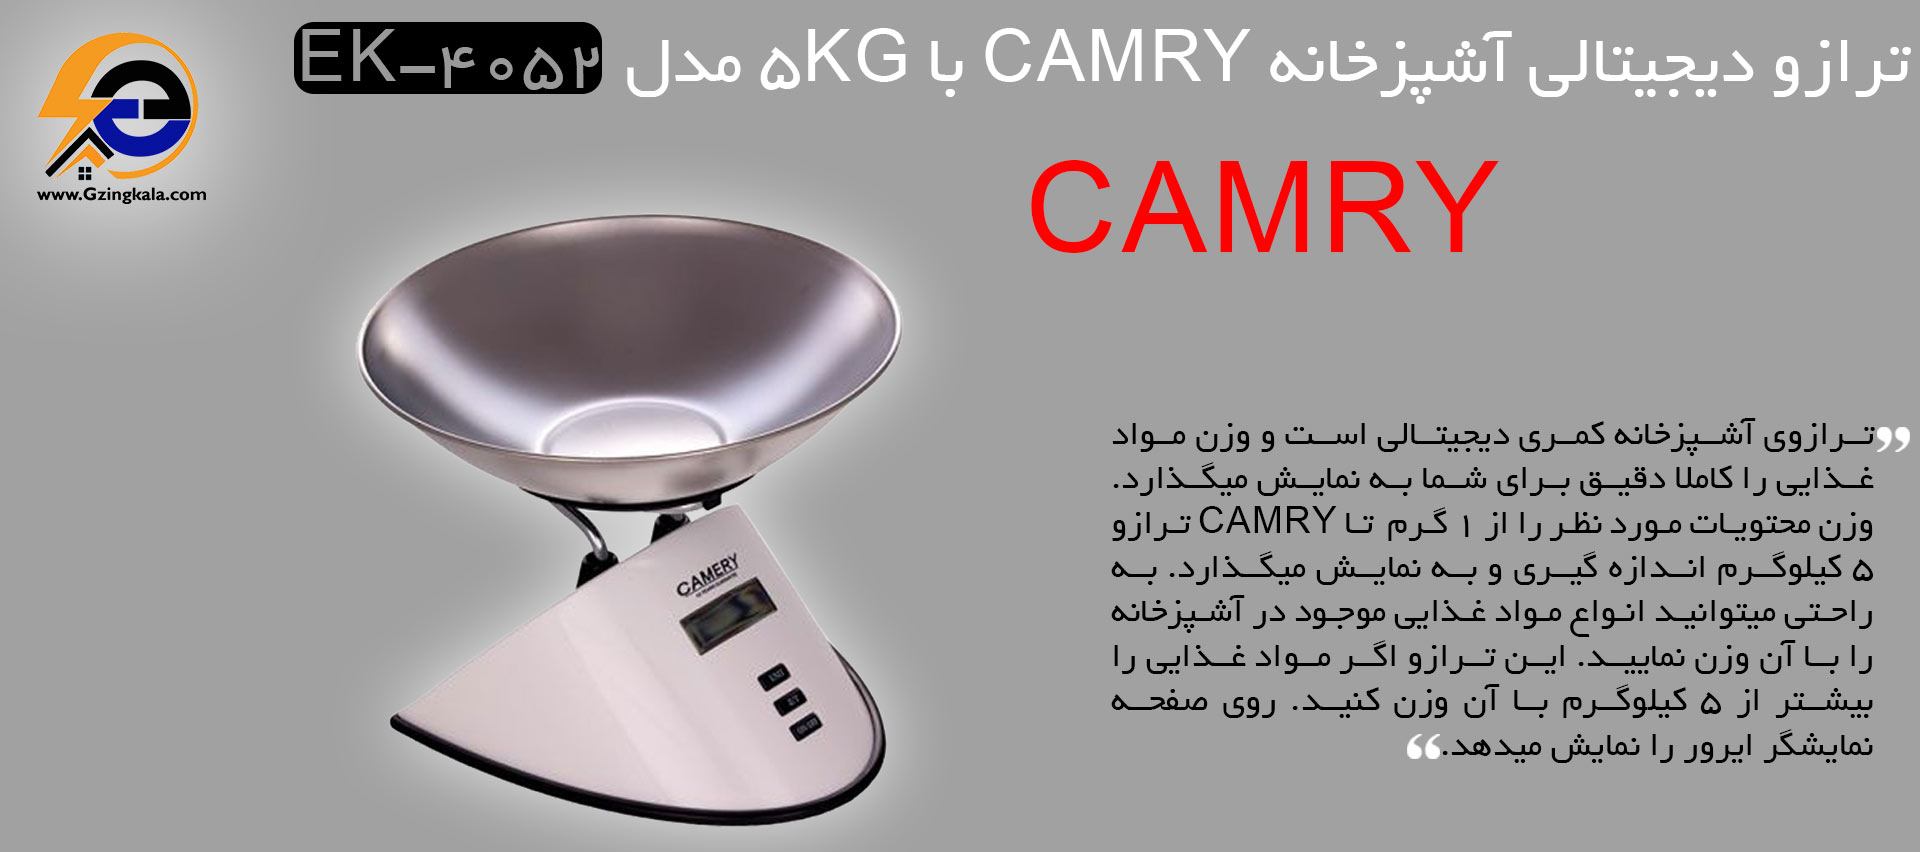 ترازو دیجیتالی آشپزخانه camry با 5kg مدل ek-4052